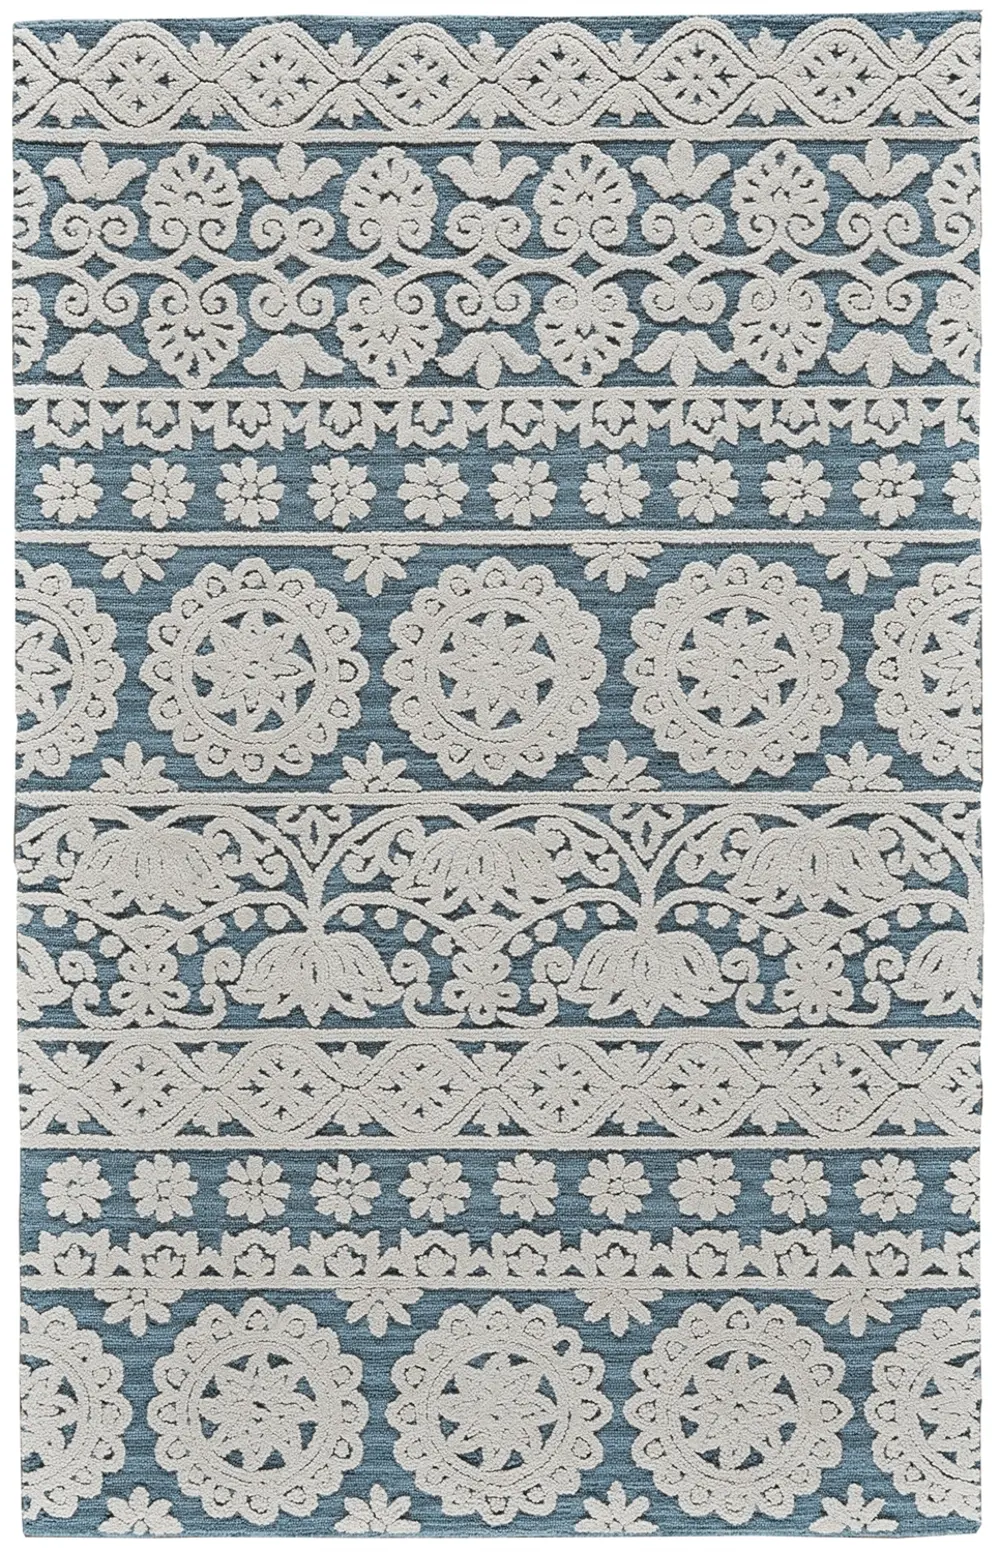 5 x 8 Medium Ivory & Sea Blue Rug - Primrose-1